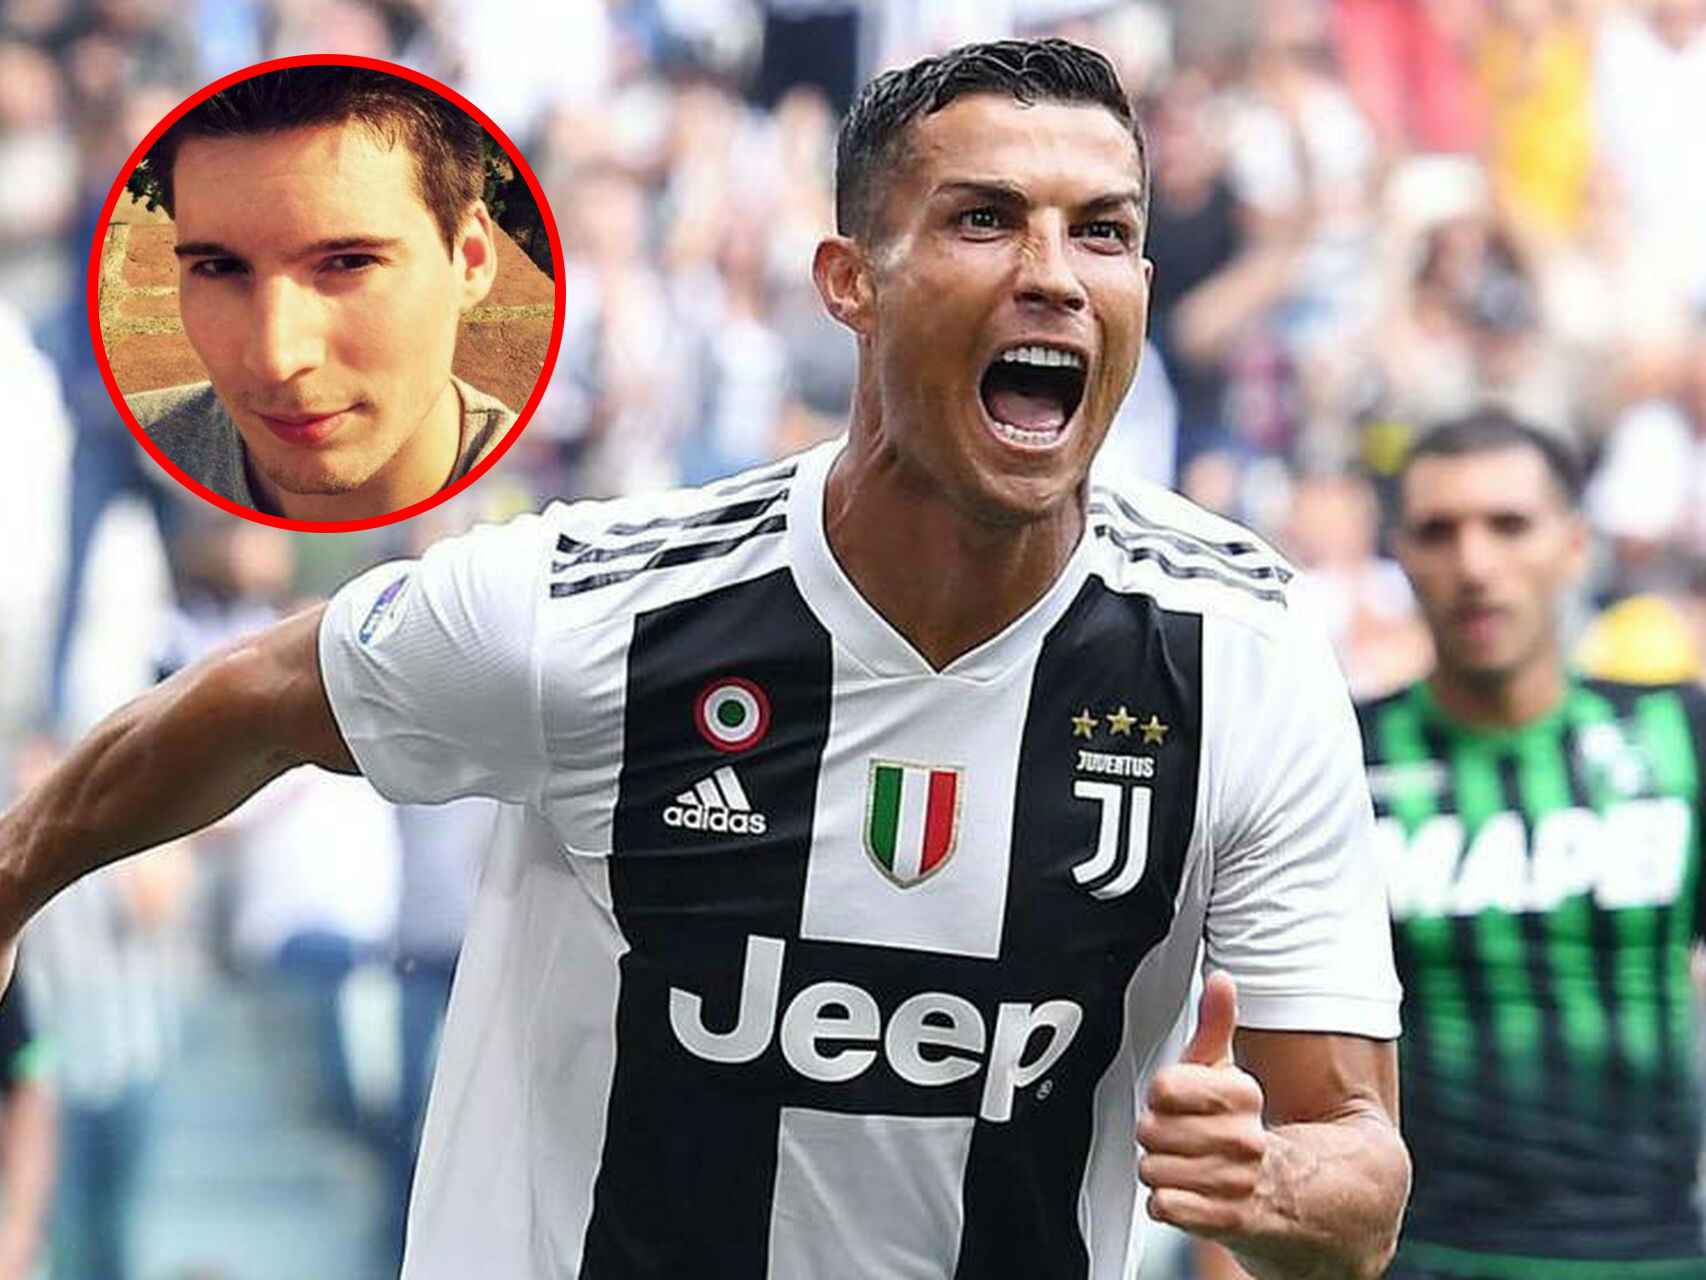 El hoy delantero de la Juventus, Cristiano Ronaldo,  fue uno de los objetivos del `hacker'.